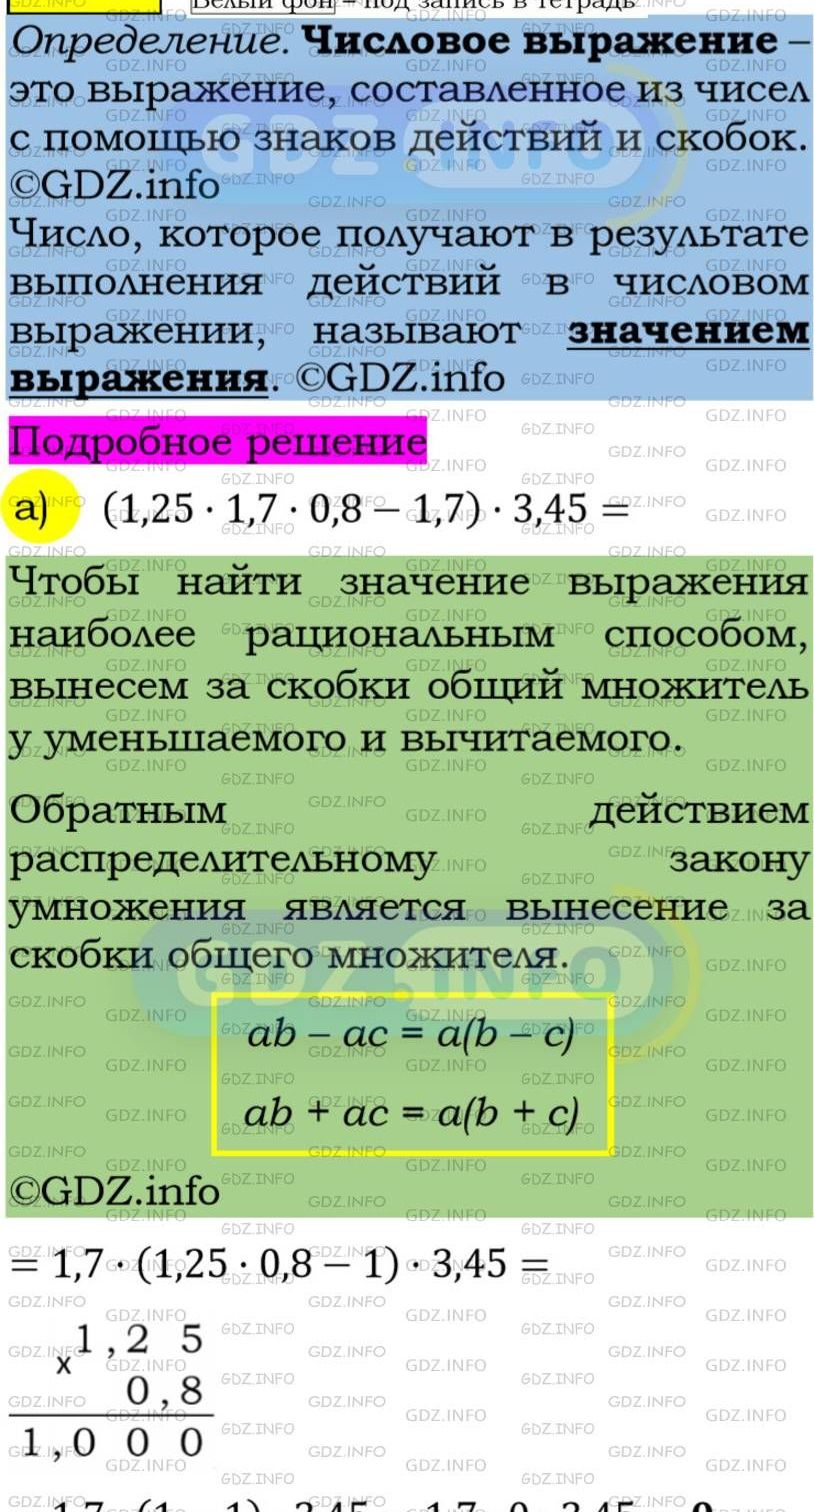 Фото подробного решения: Номер задания №219 из ГДЗ по Алгебре 7 класс: Макарычев Ю.Н.